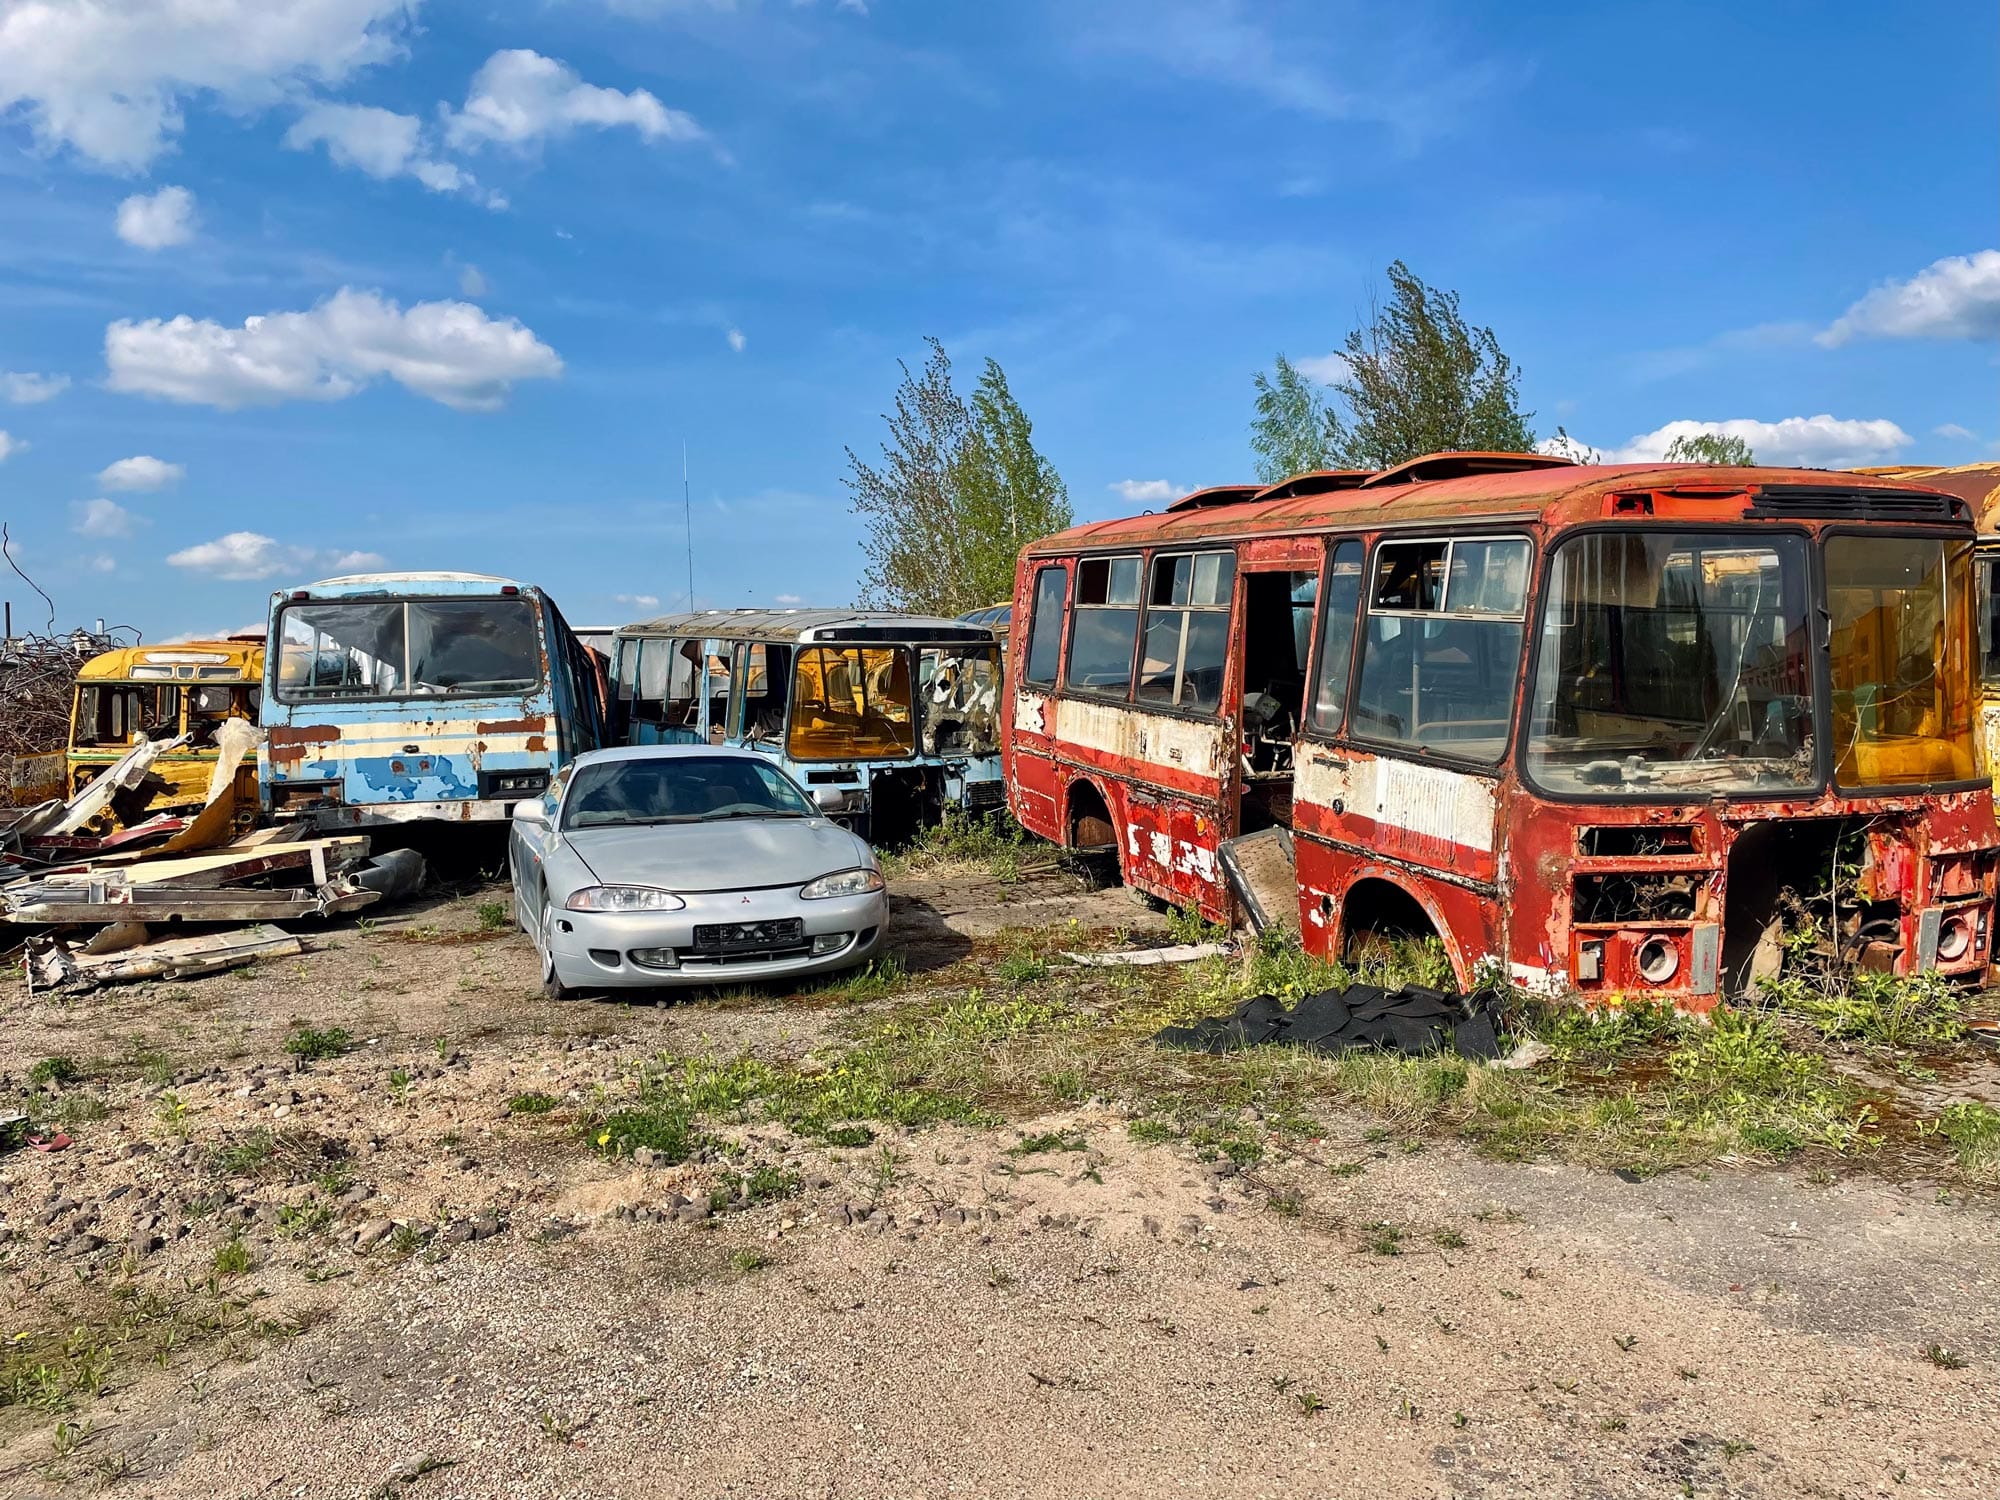 Sovietinių autobusų parkas